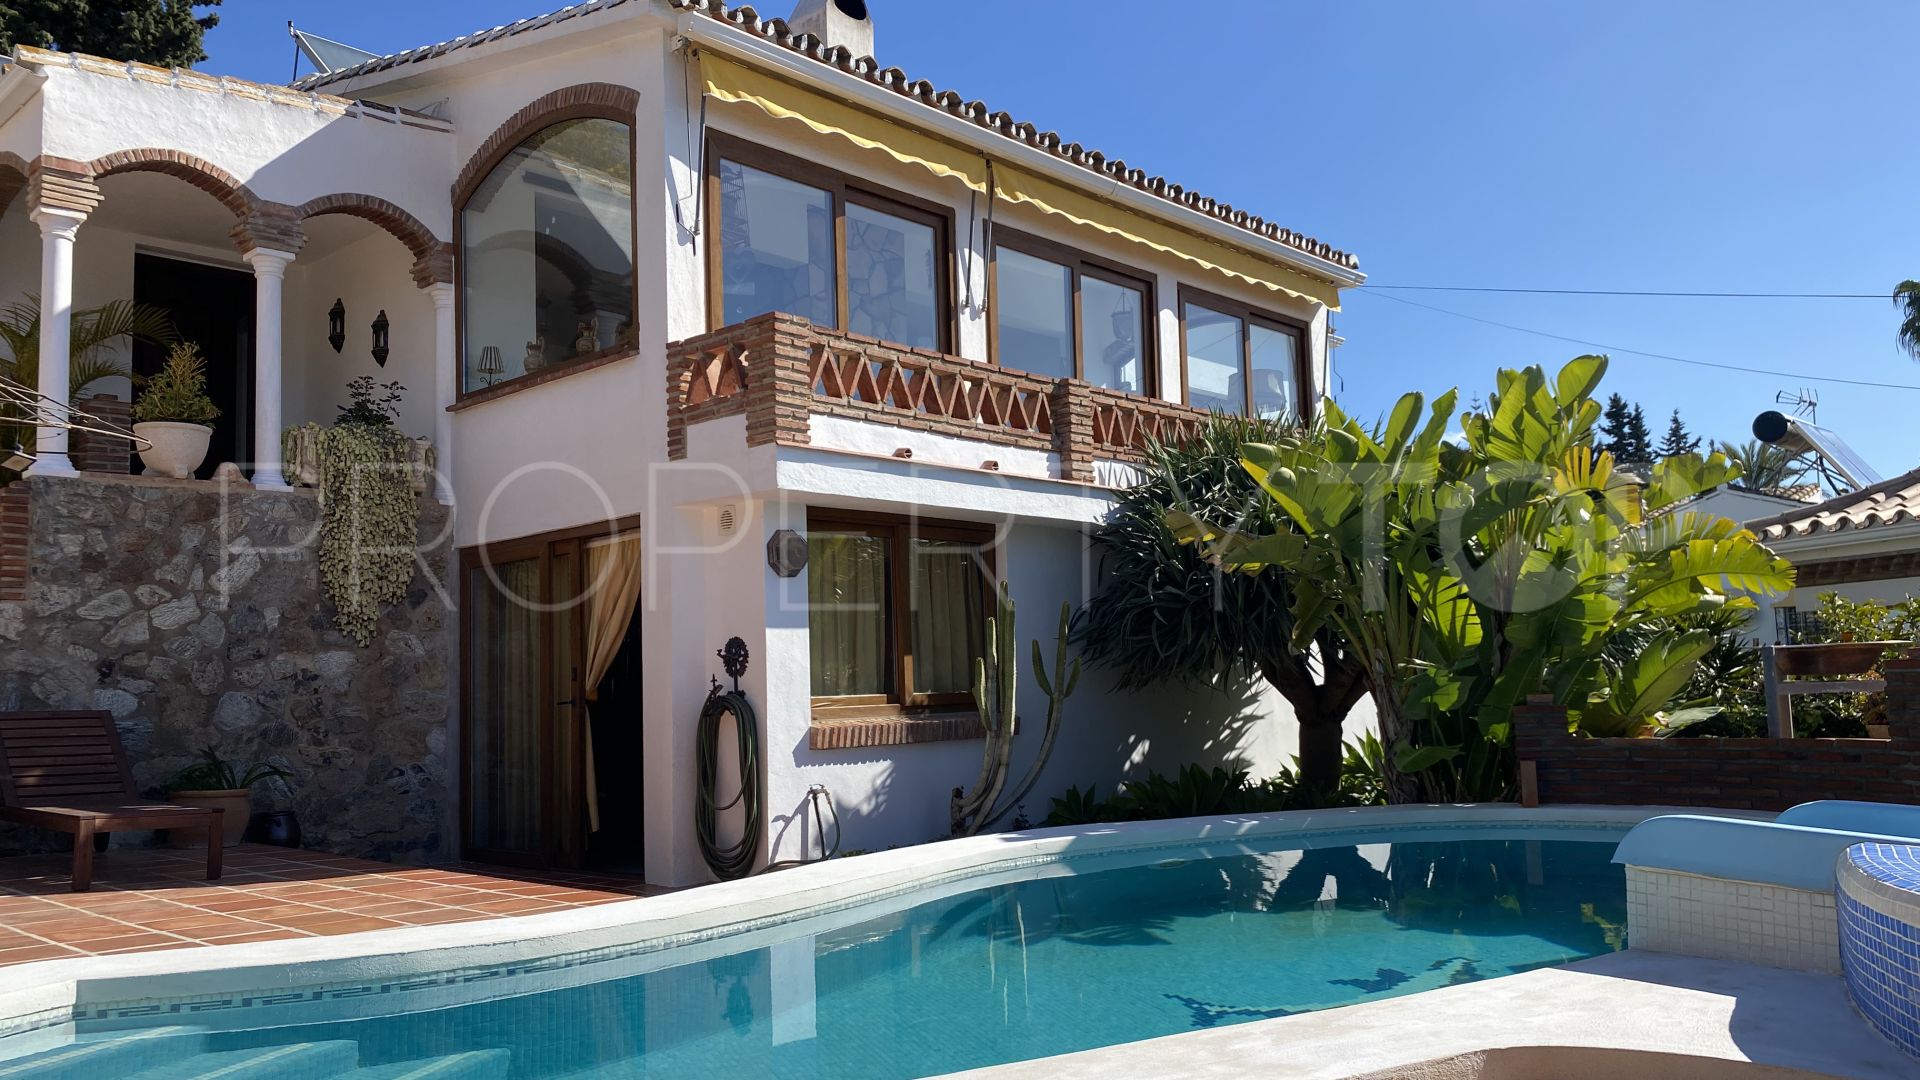 5 bedrooms Sierrezuela villa for sale